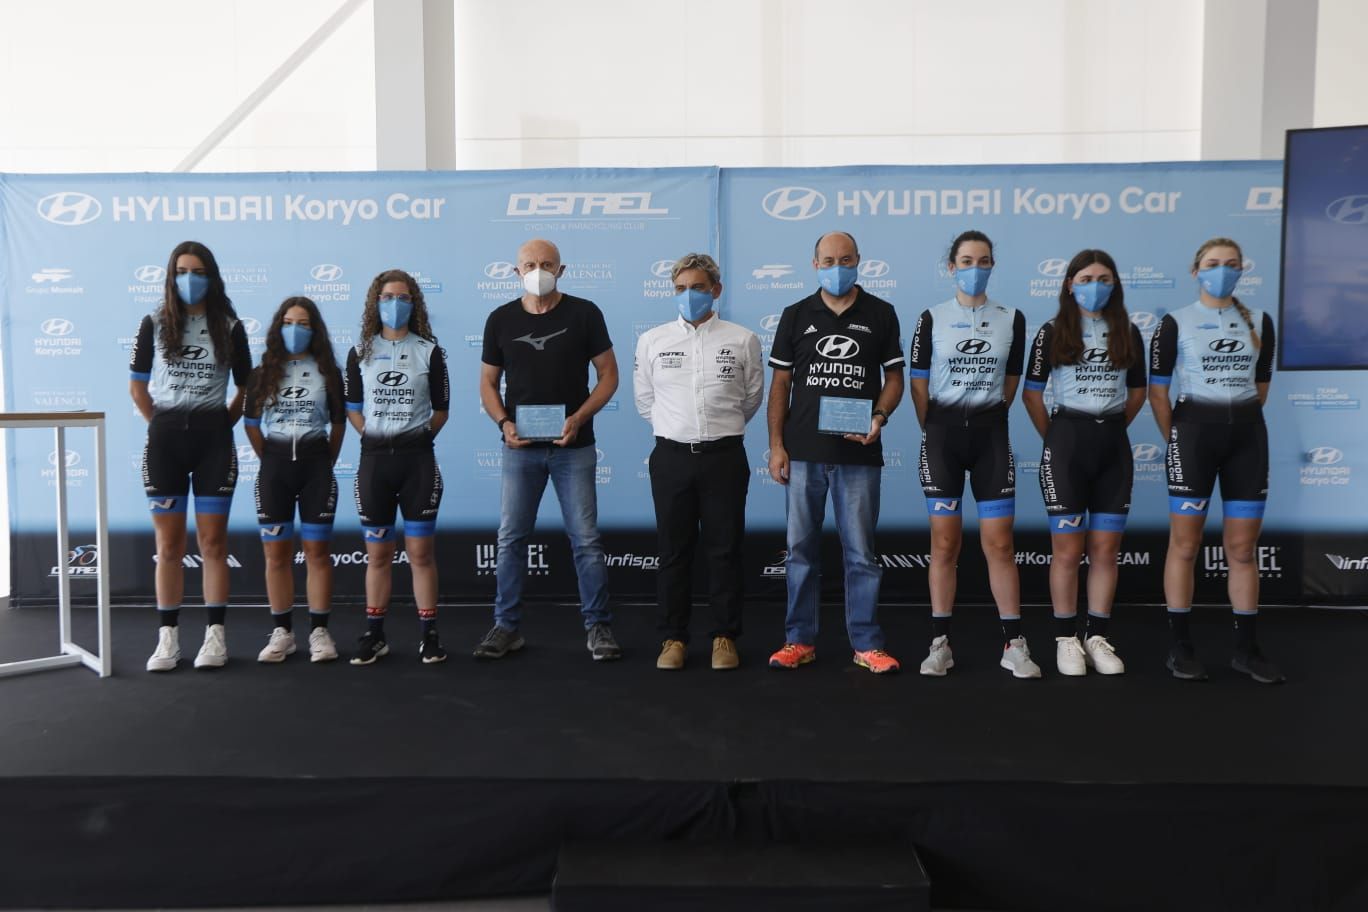 Presentación del equipo ciclista Hyundai Koryo Car